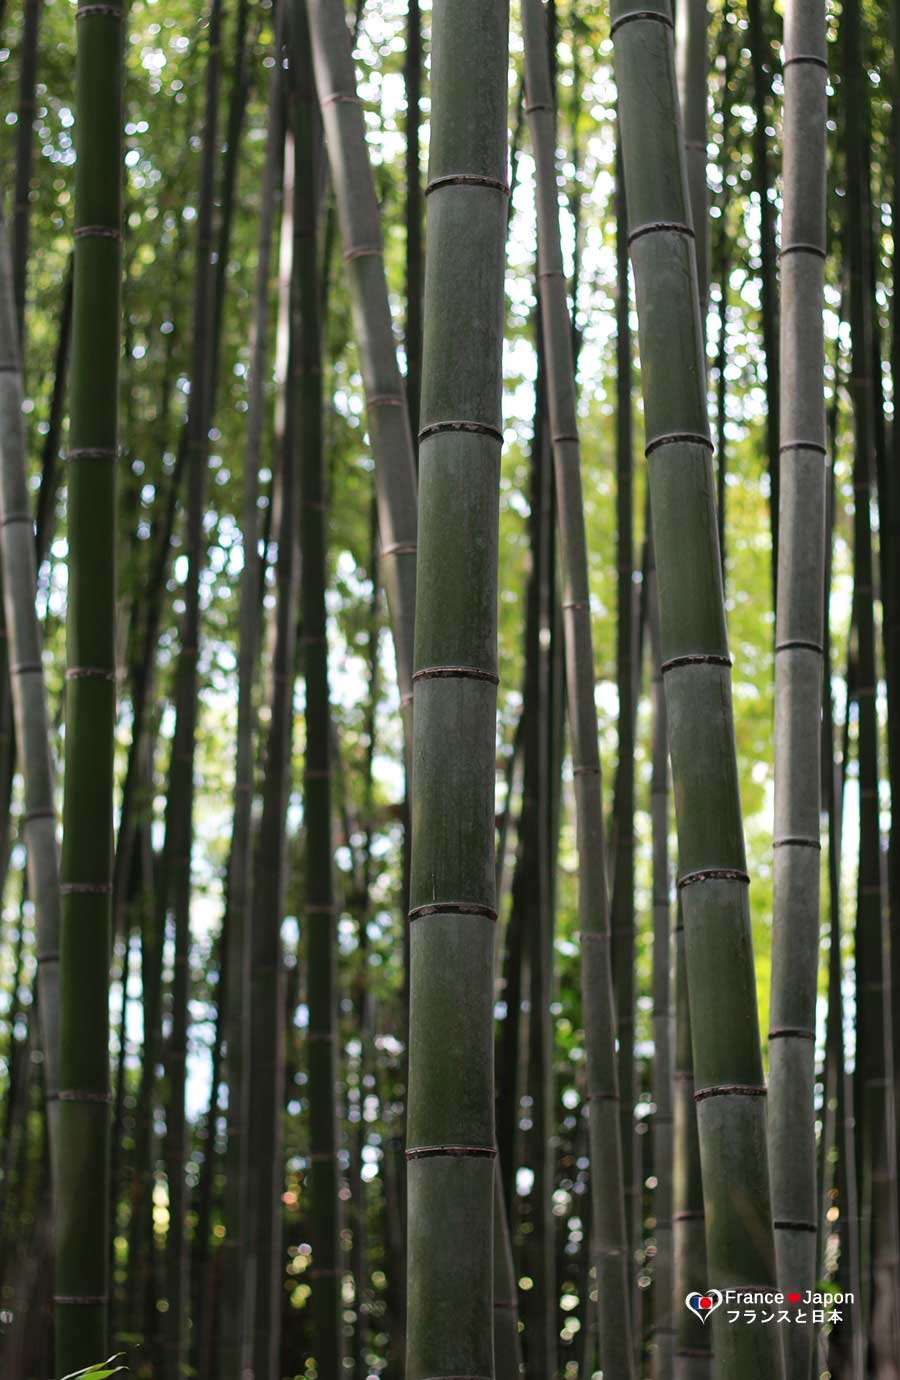 voyage japon visiter la foret bambous arashiyama kyoto